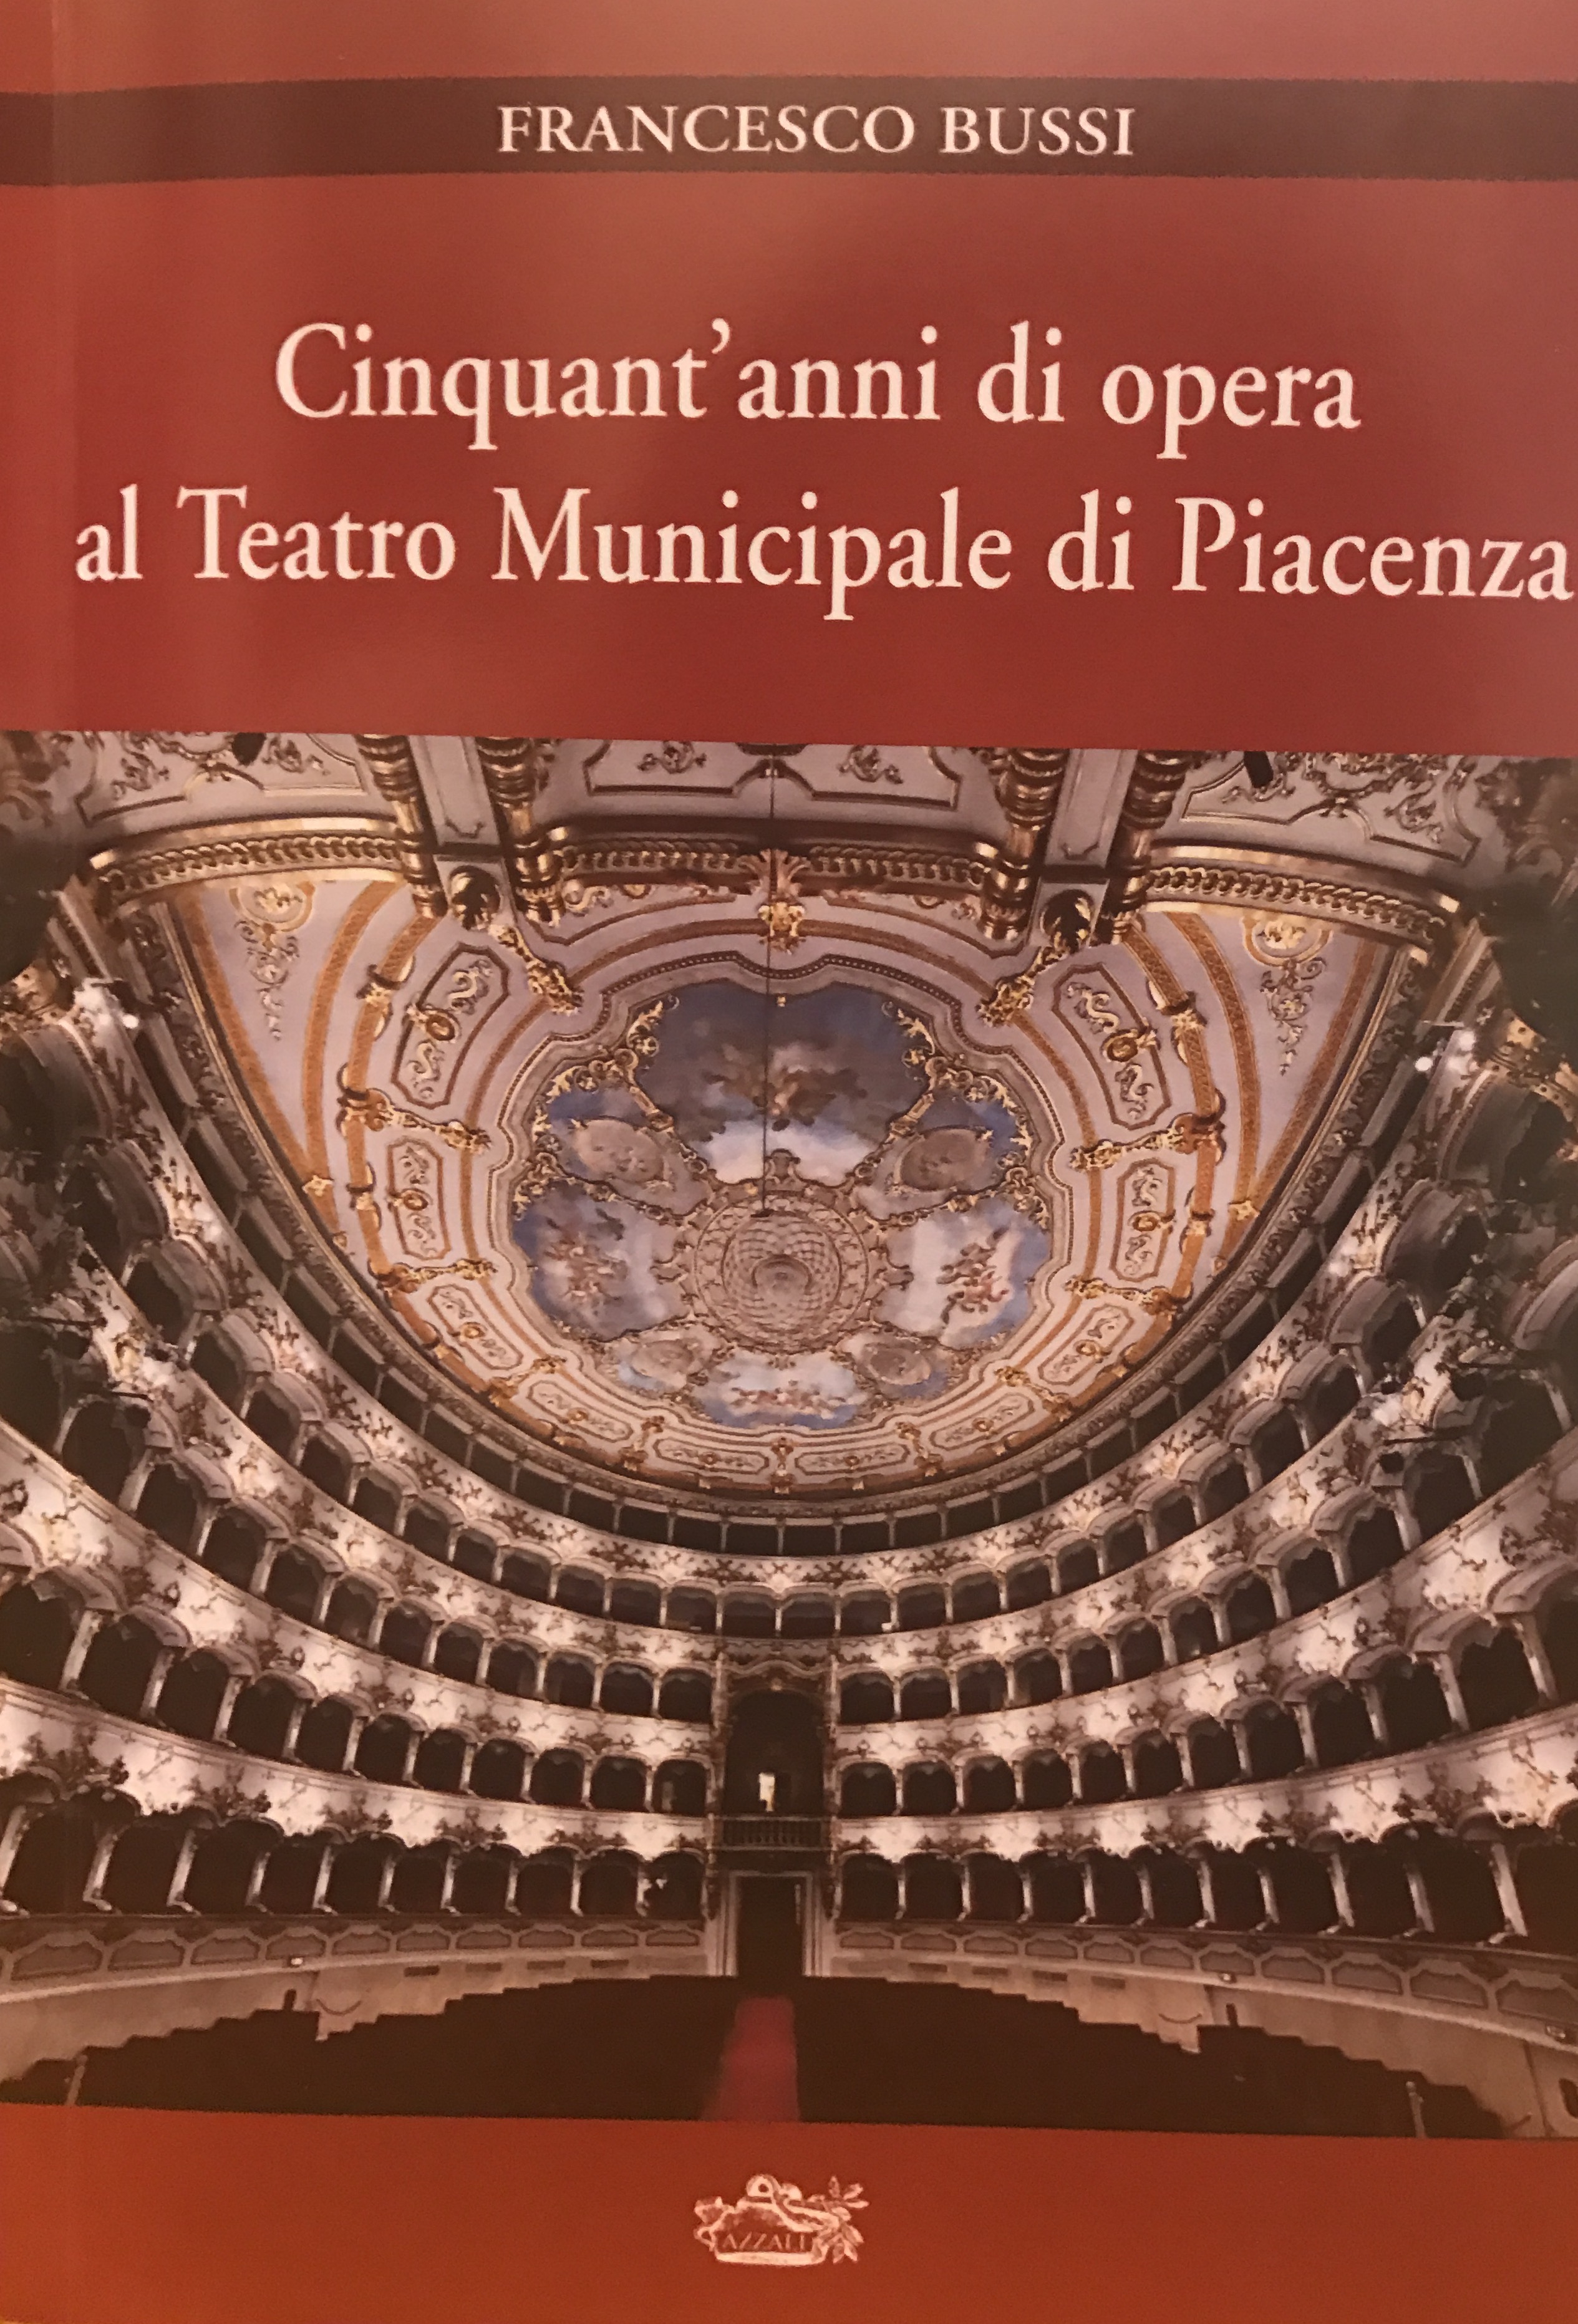 Debutta domenica “Aperitivo all’opera” al Teatro Municipale di Piacenza